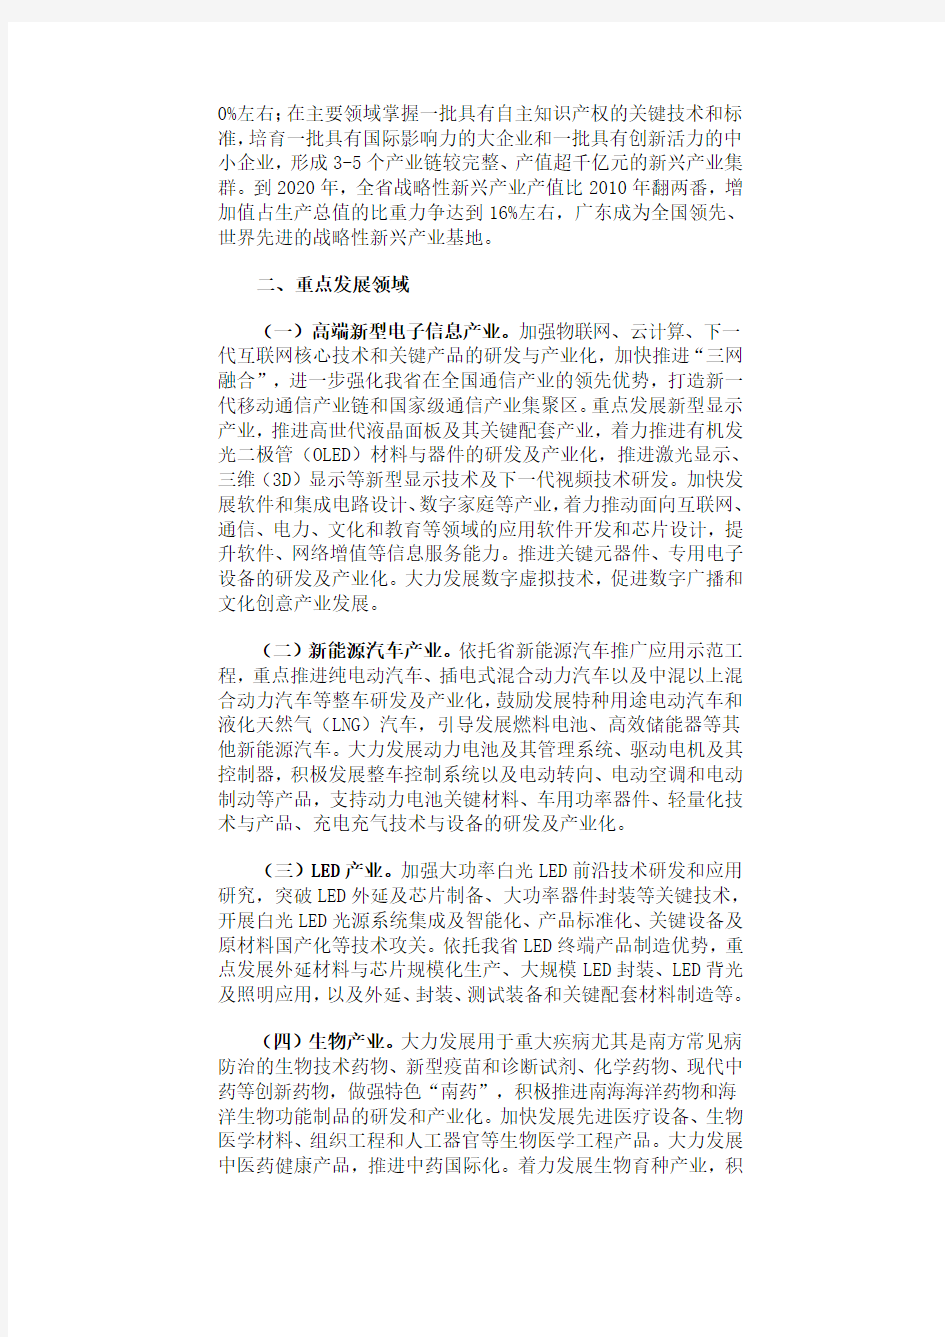 广东省《关于贯彻落实国务院部署加快培育和发展战略性新兴产业的意见》2